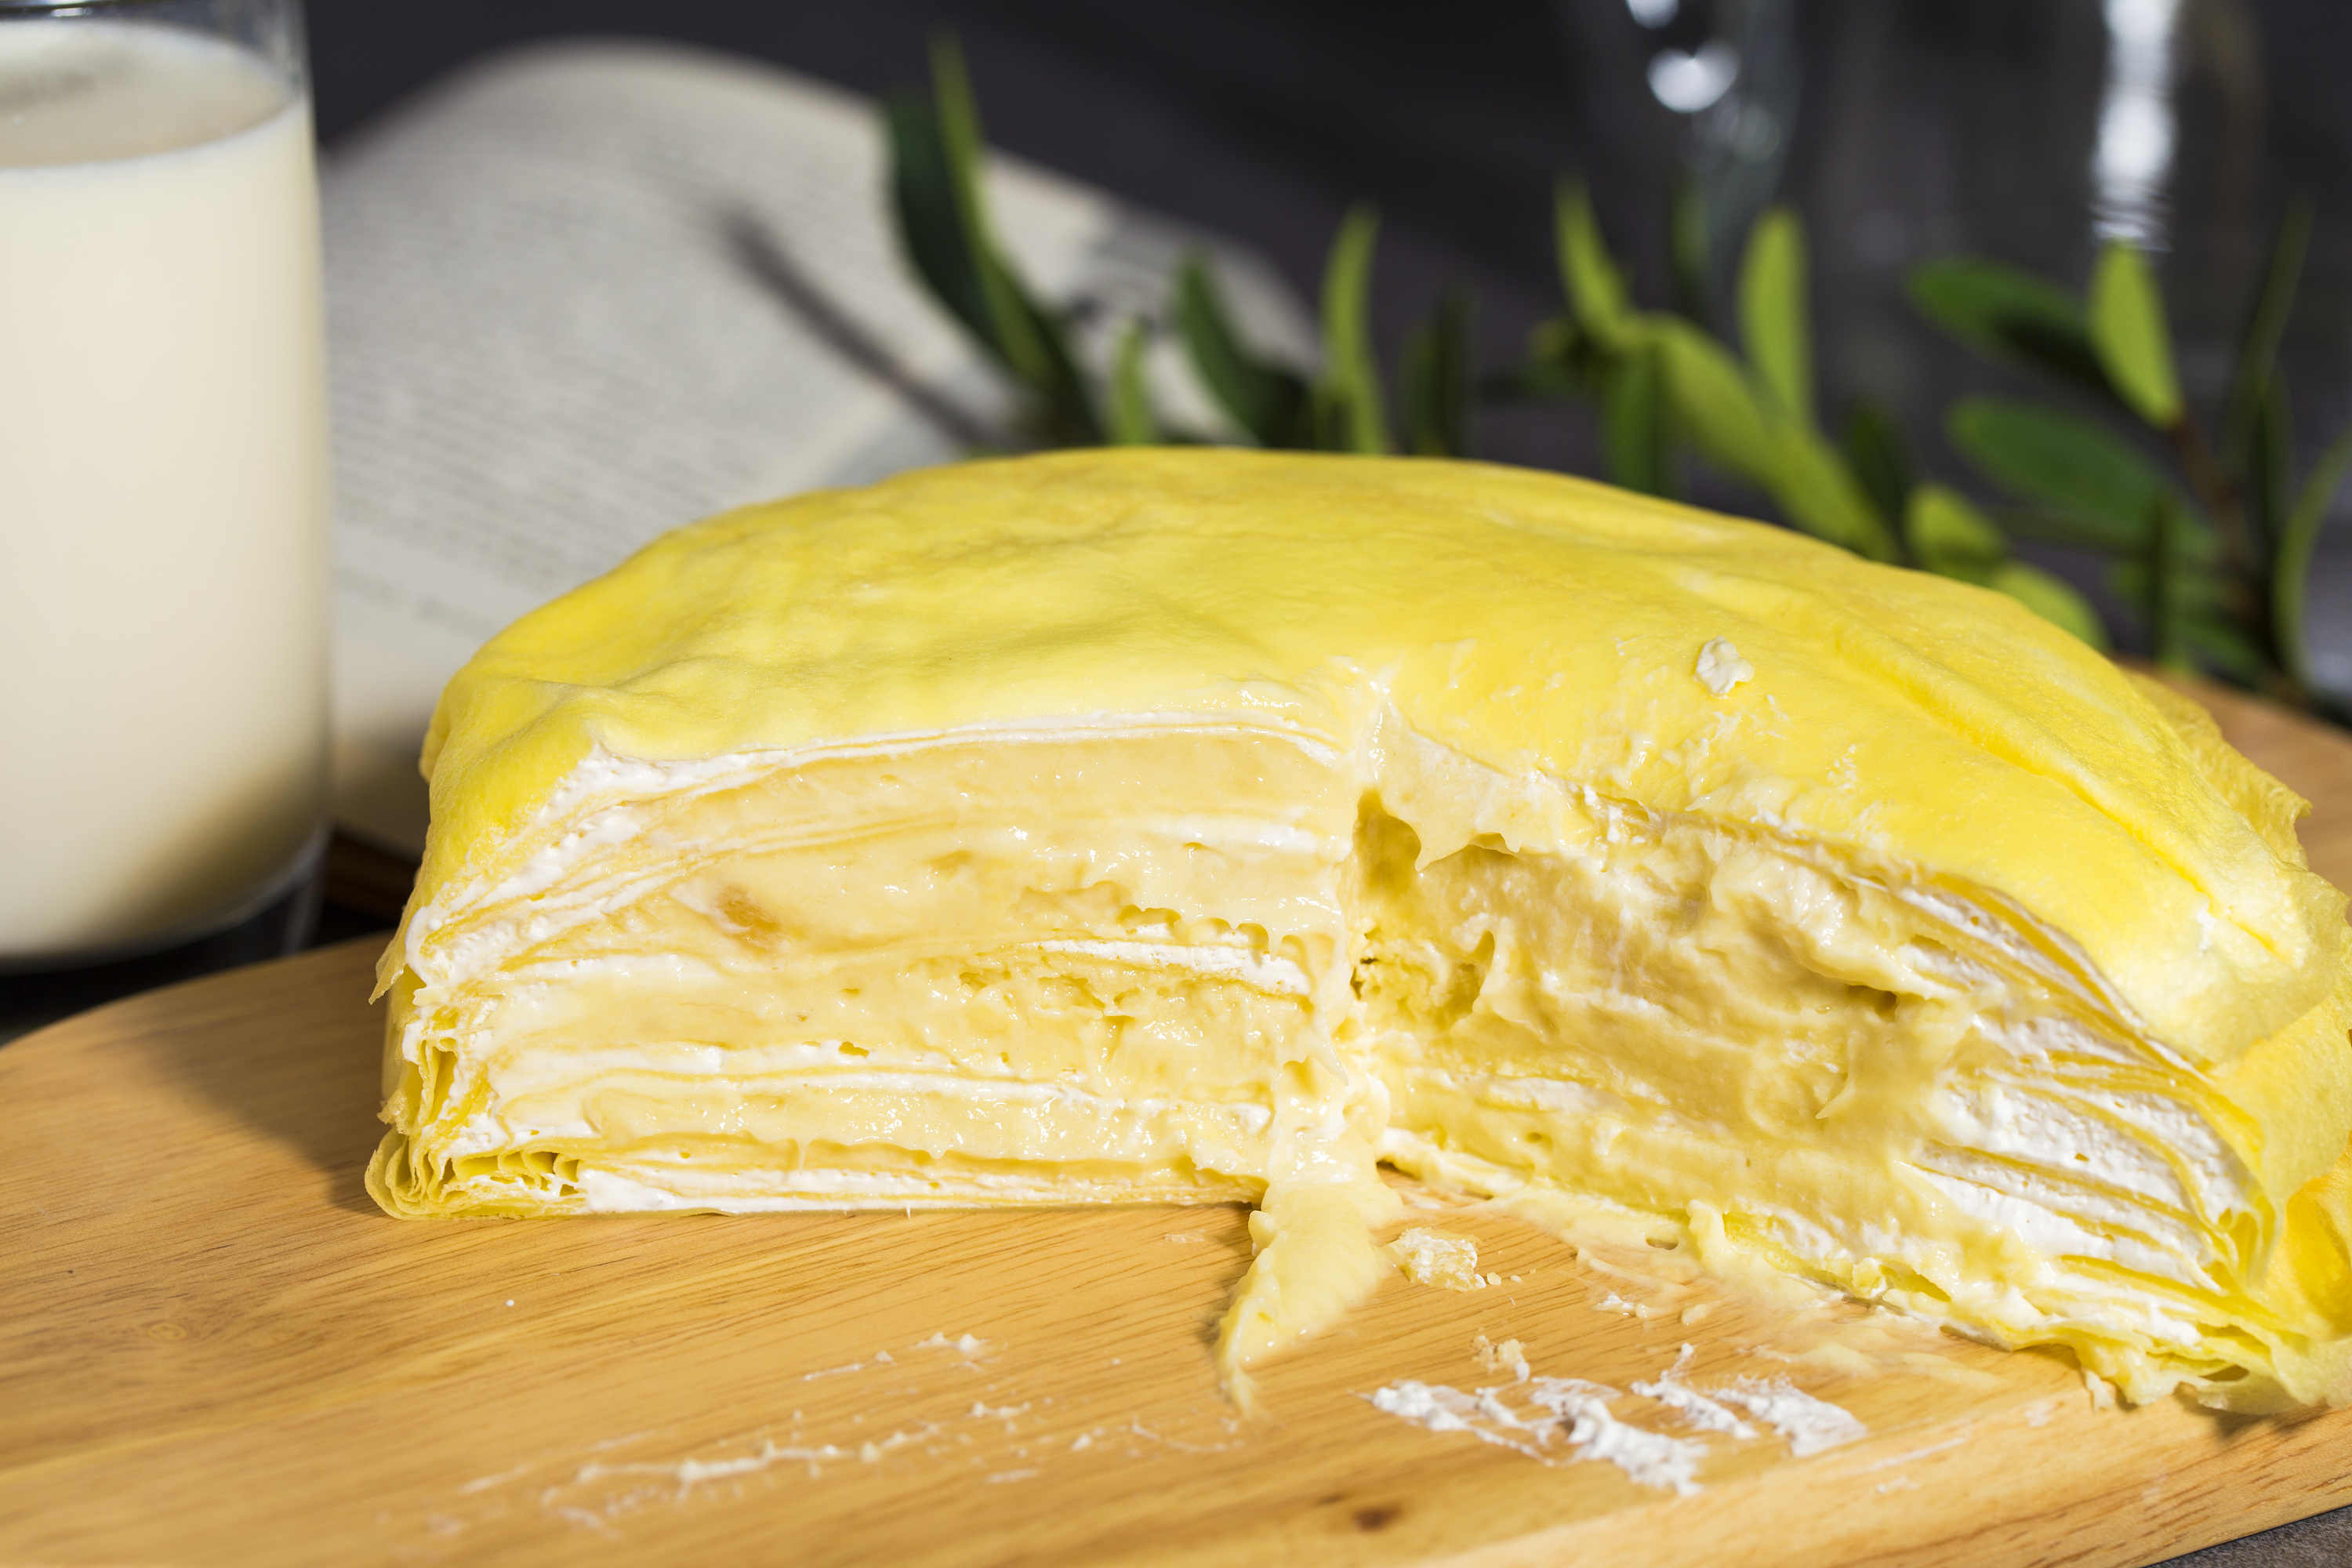 Premium Durian Pie 浓郁榴莲派 – Morihana Pastry